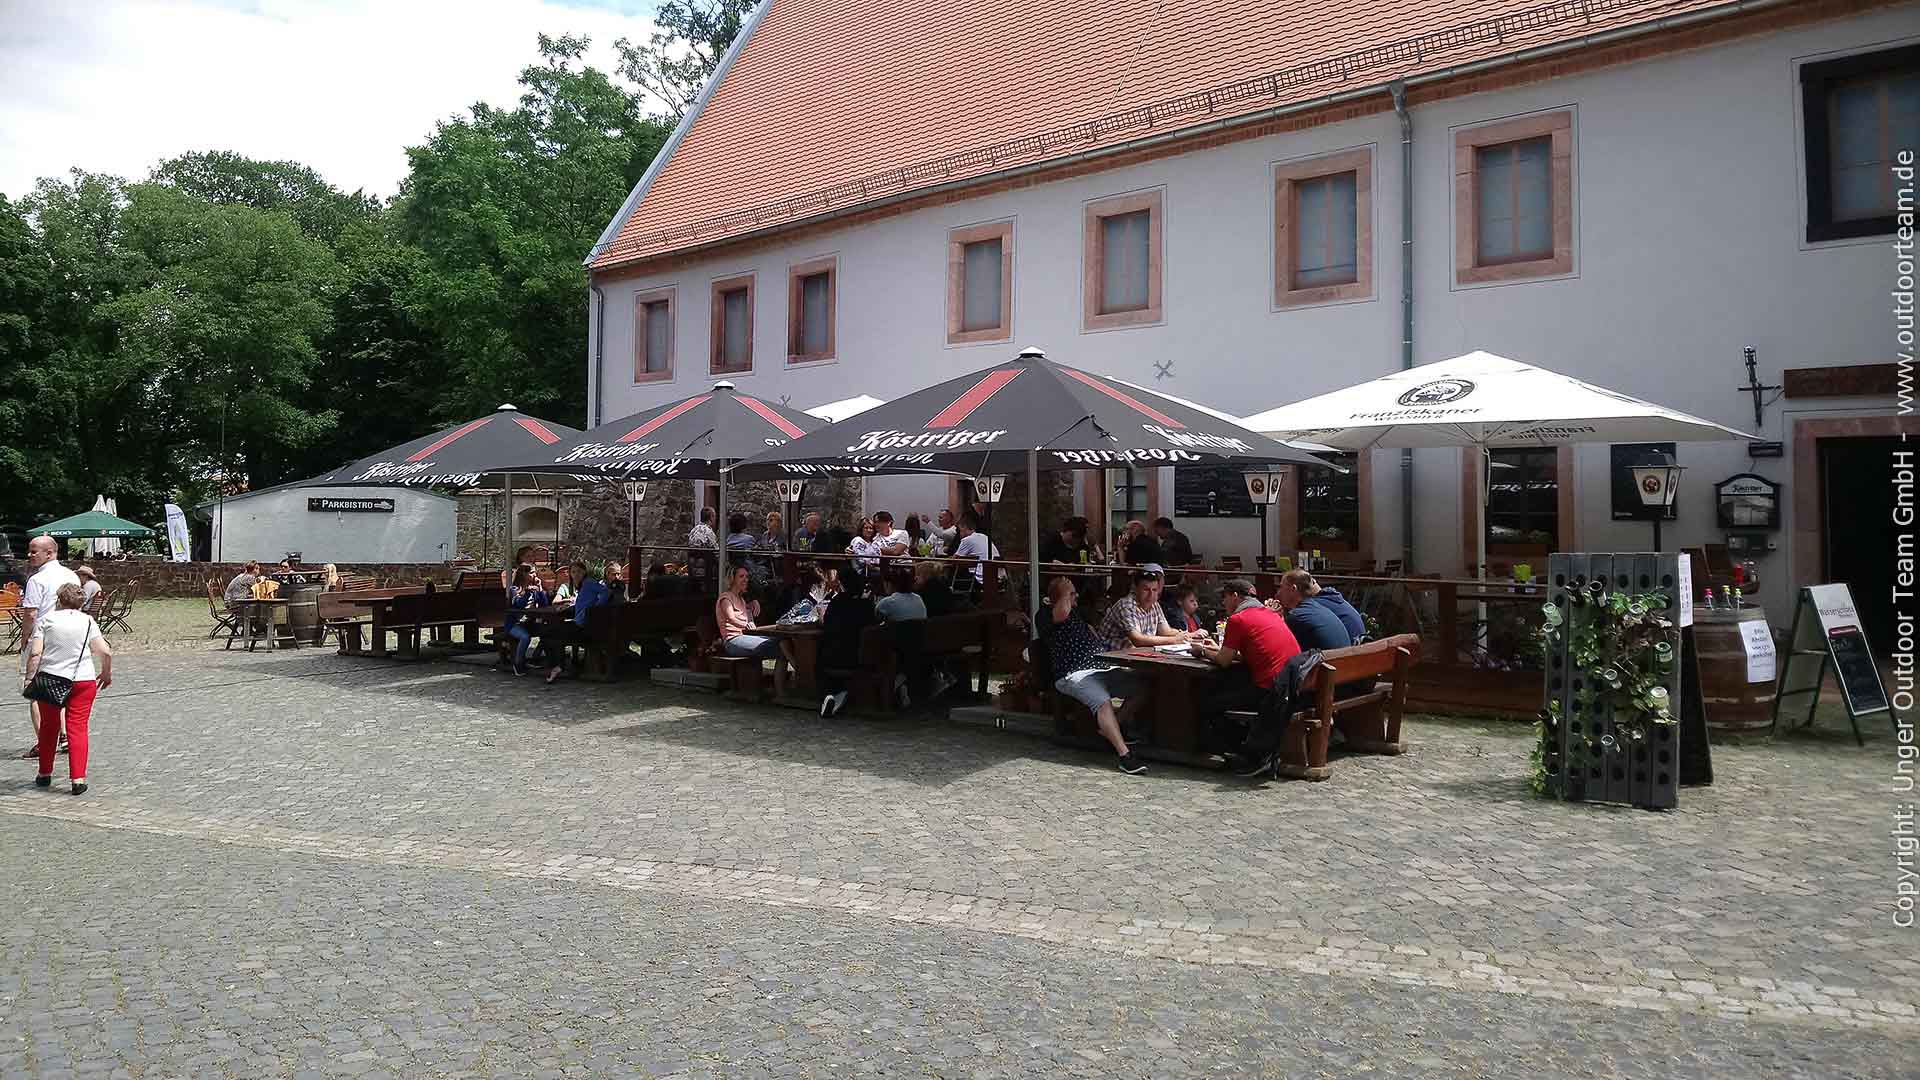 Im Wasserschloss Podelwitz findet der Paddler: Biergarten, Restaurant, Campmöglichkeit, Herberge, Toiletten, Kulturveranstaltungen ... und eine gut ausgebaute Bootsanlegestelle!